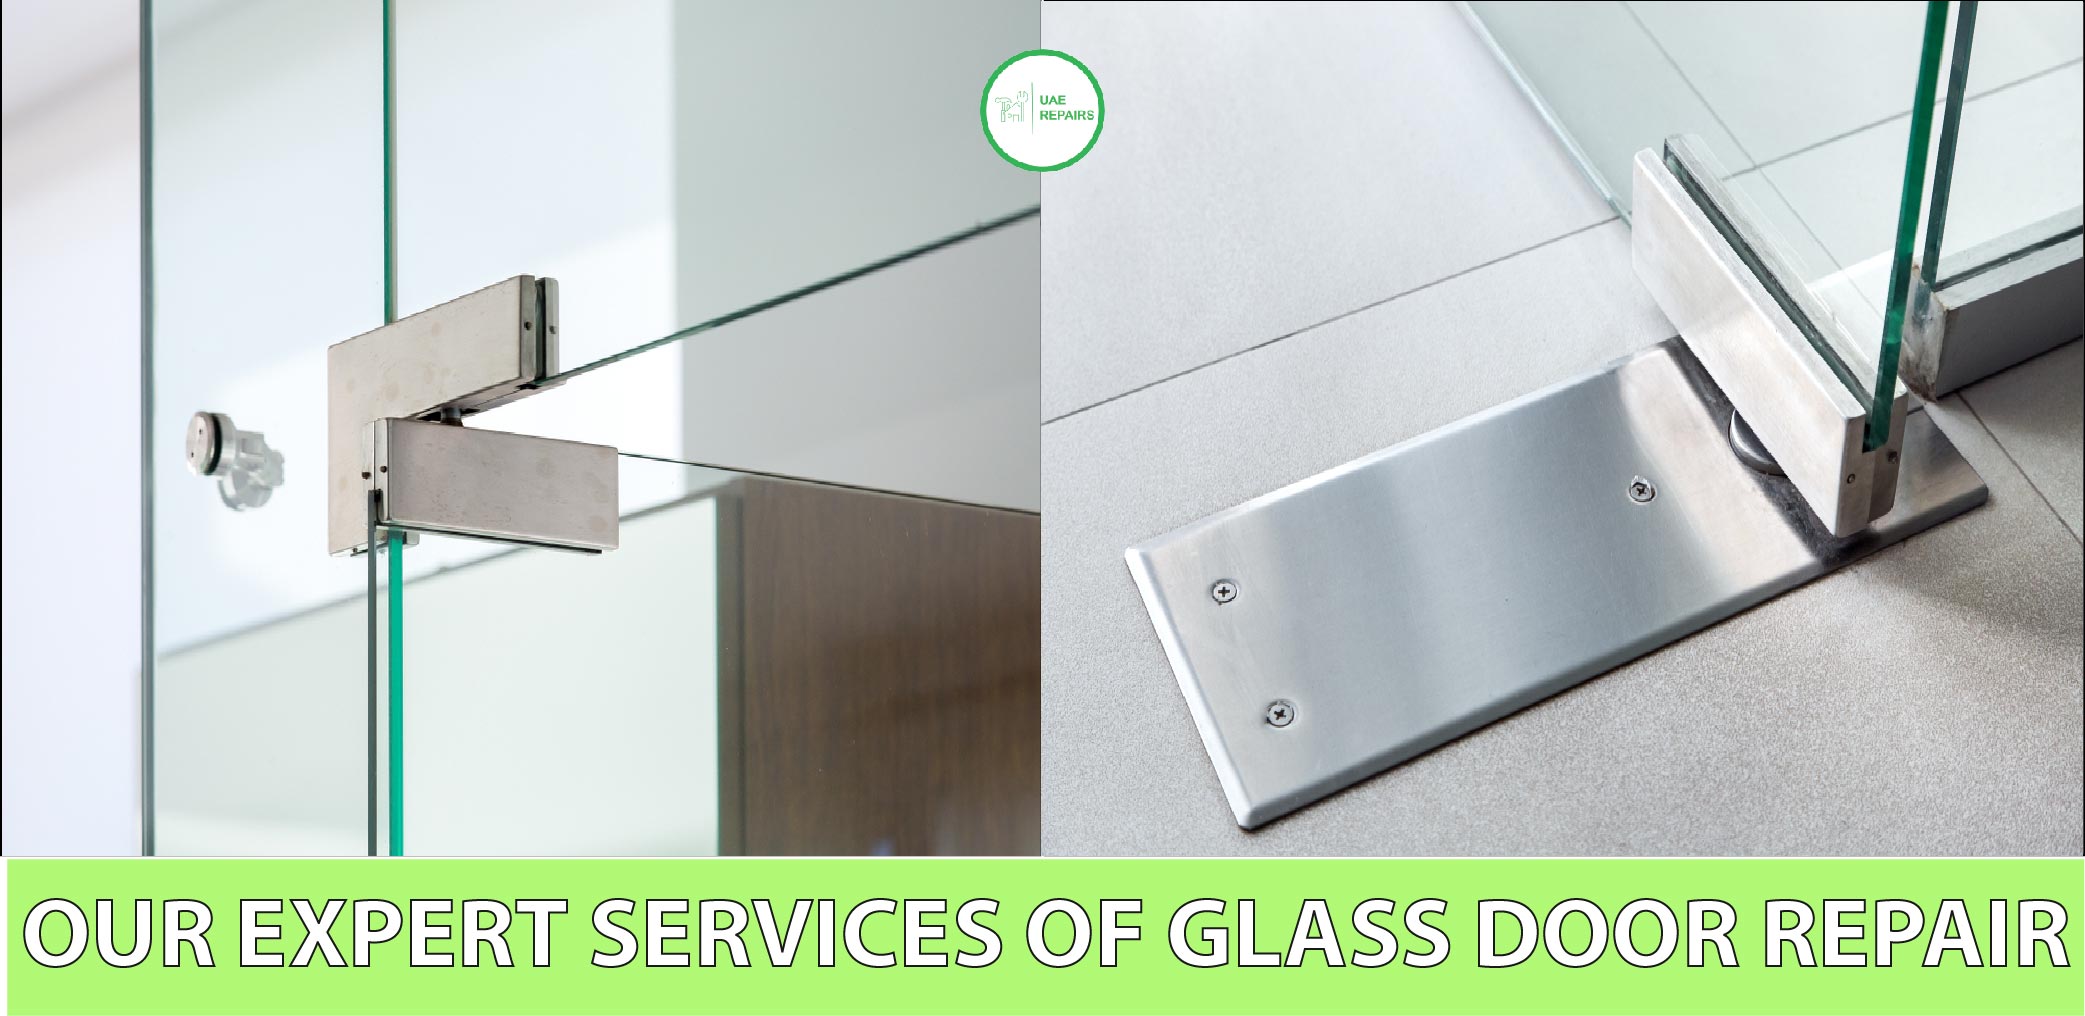 UAE REPAIRS Our Expert Glass Door Repair Services Dubai CONTACT US 0588997516